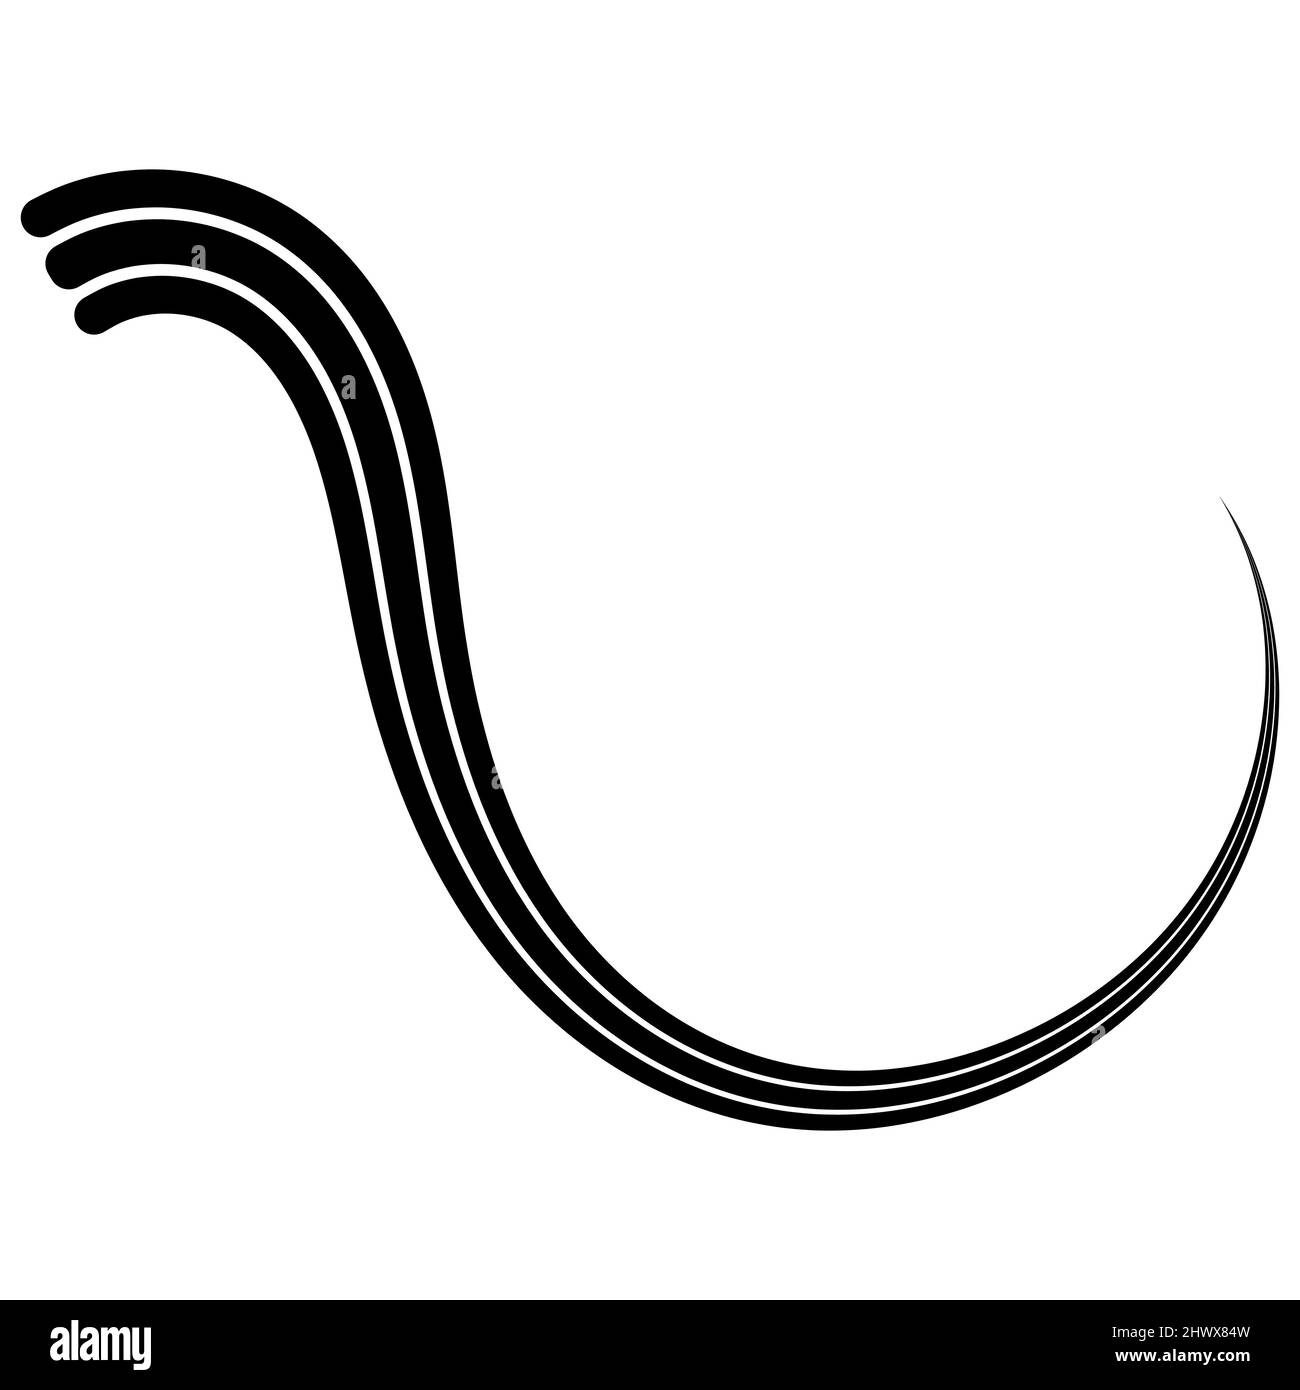 Gekrümmter kalligraphischer dreifacher Streifen, Vektor, Band, wie ein Reise-Kalligraphie-Element, anmutig geschwungene Linie Stock Vektor